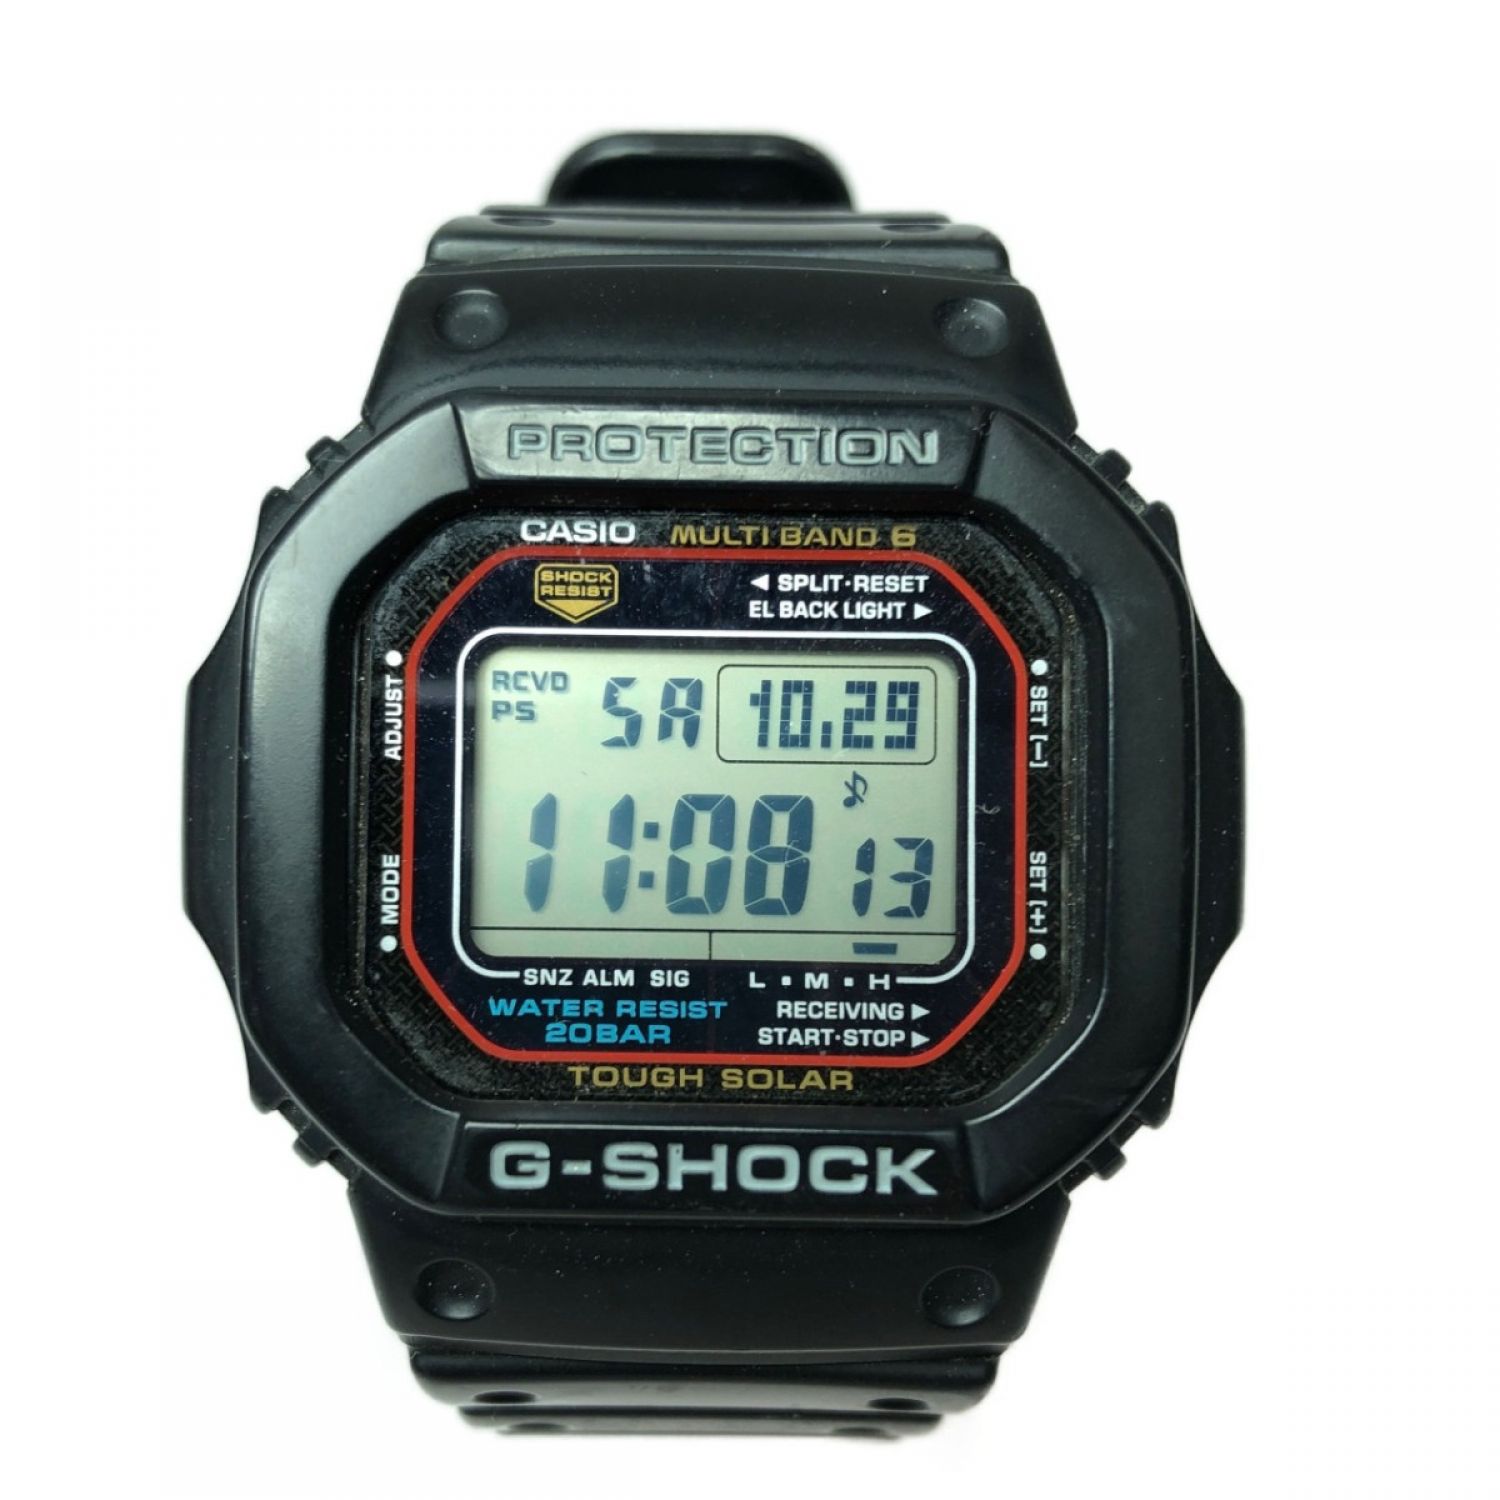 G-SHOCK GW-M5610 ジーショック CASIO カシオ - 腕時計(デジタル)